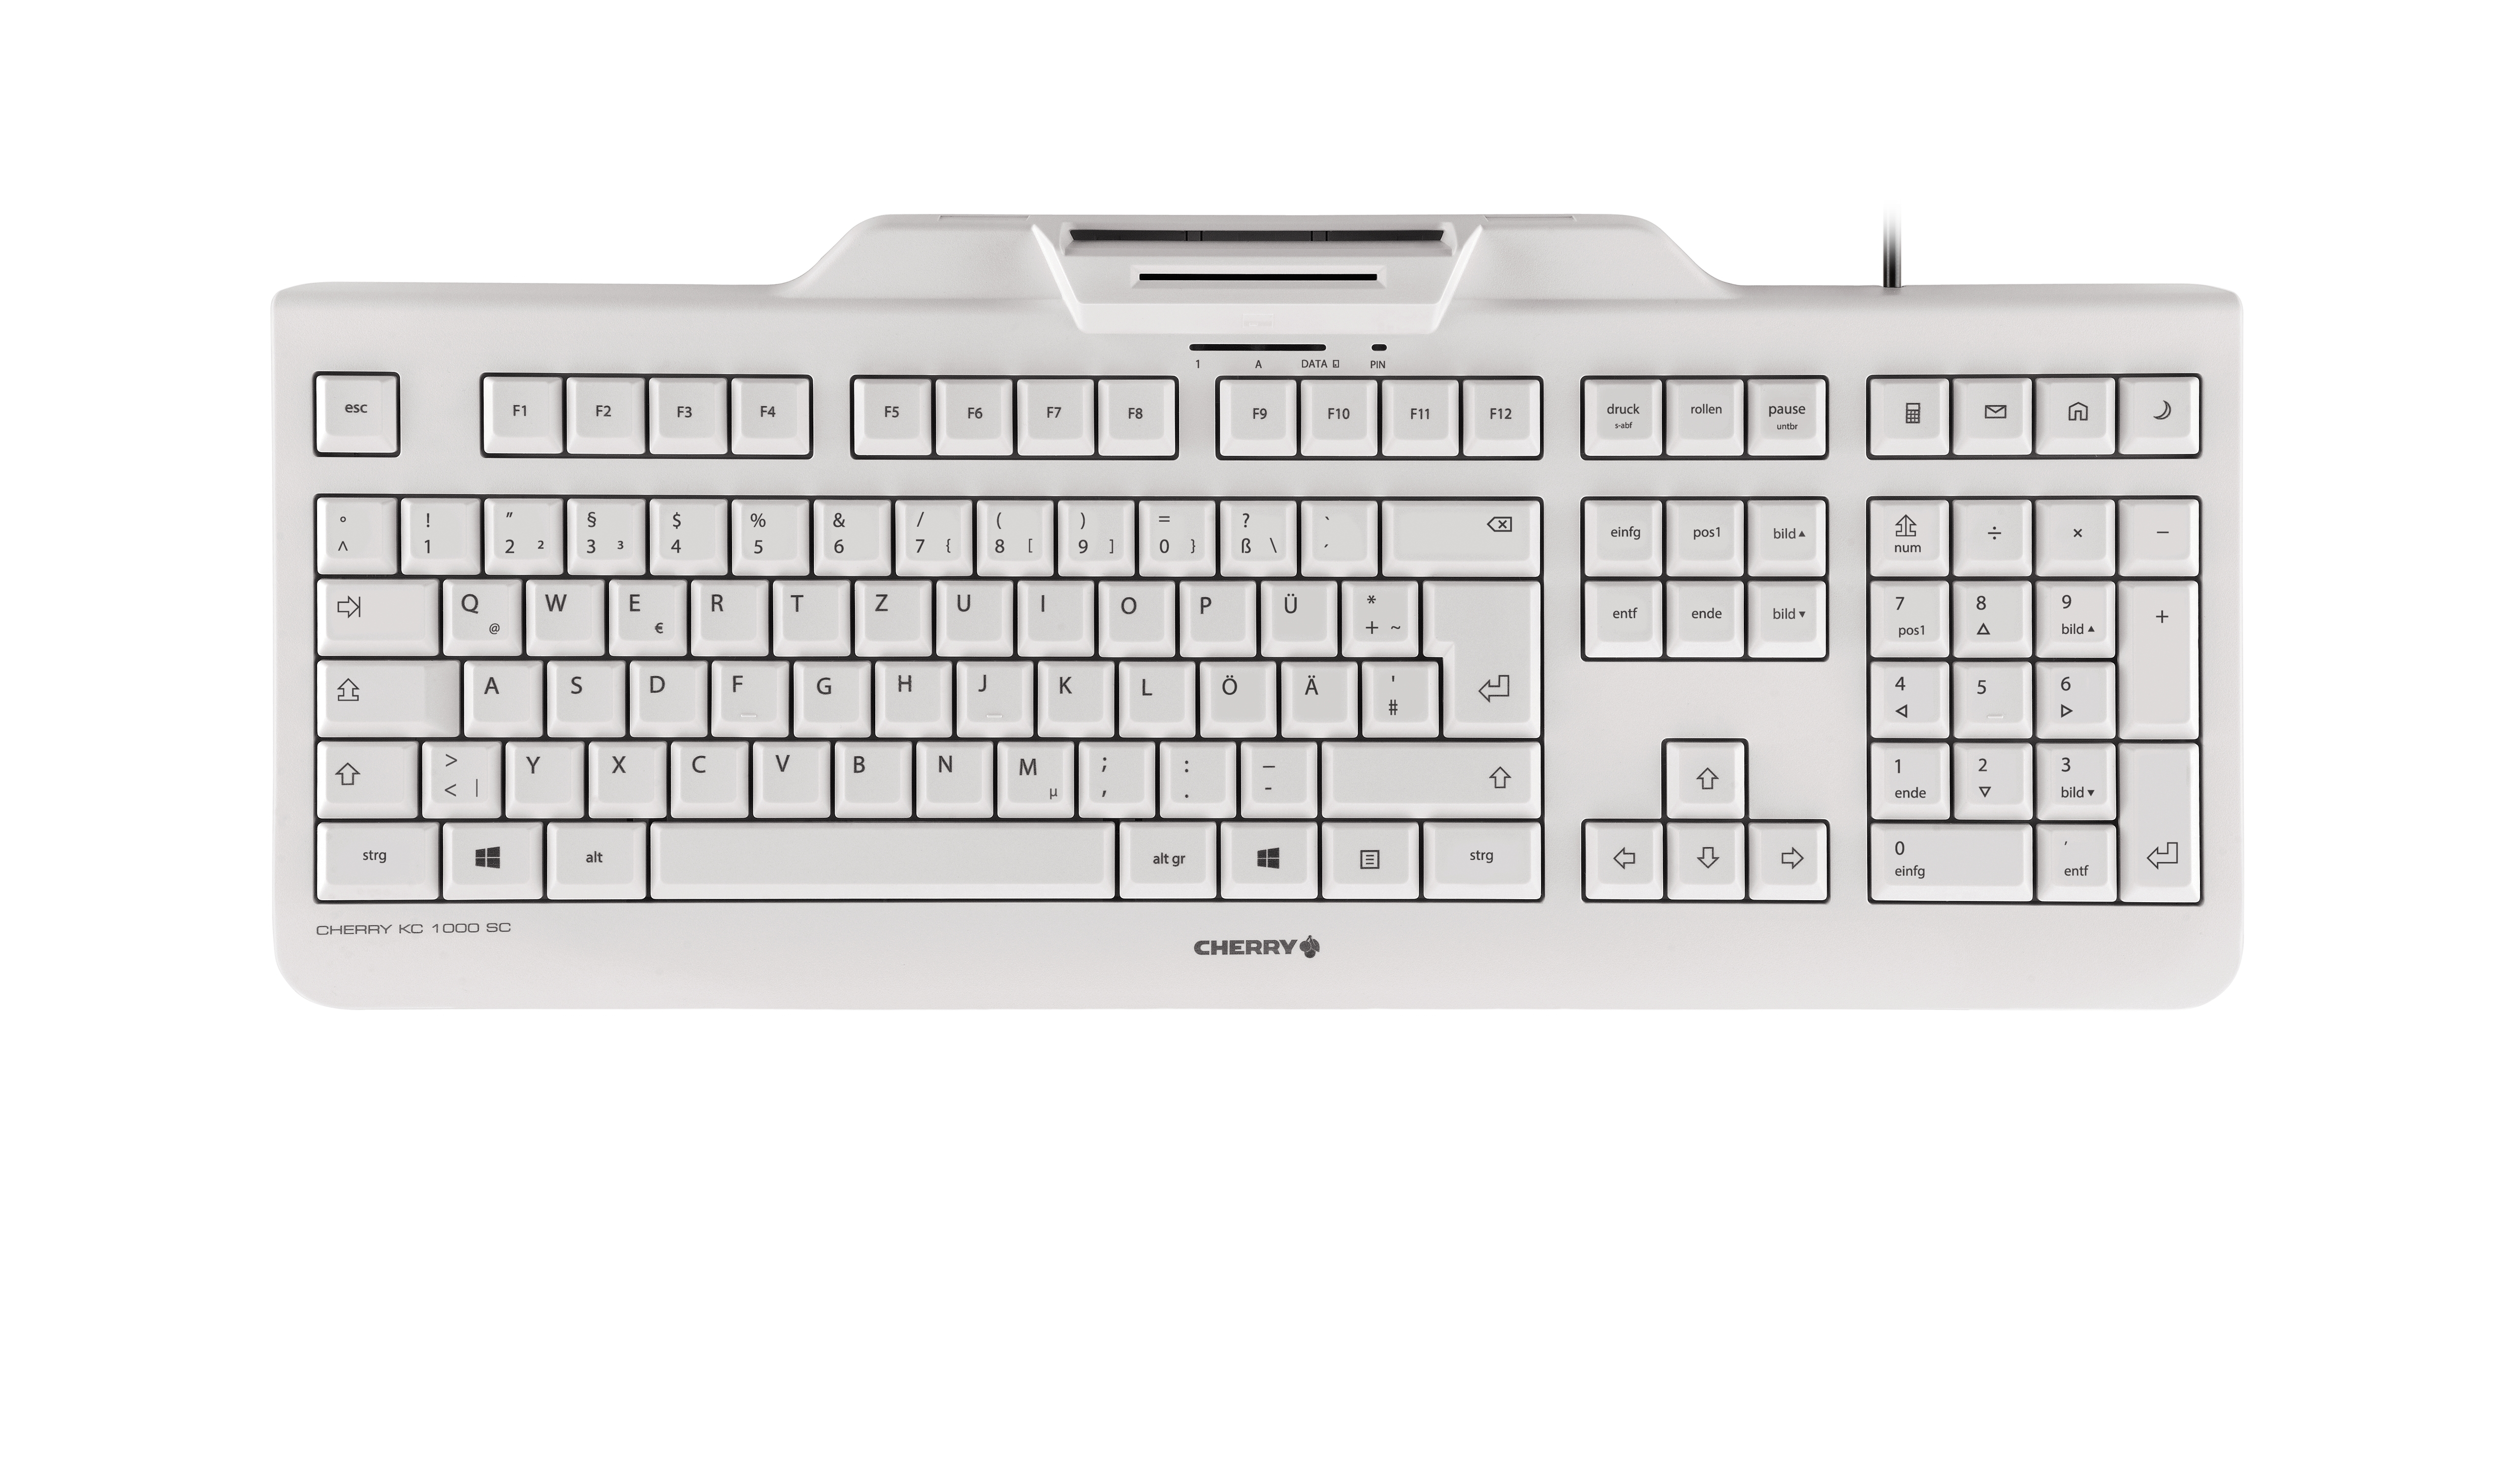 Cherry Tastatur KC 1000 SC (JK-A0100DE-0) weiß-grau